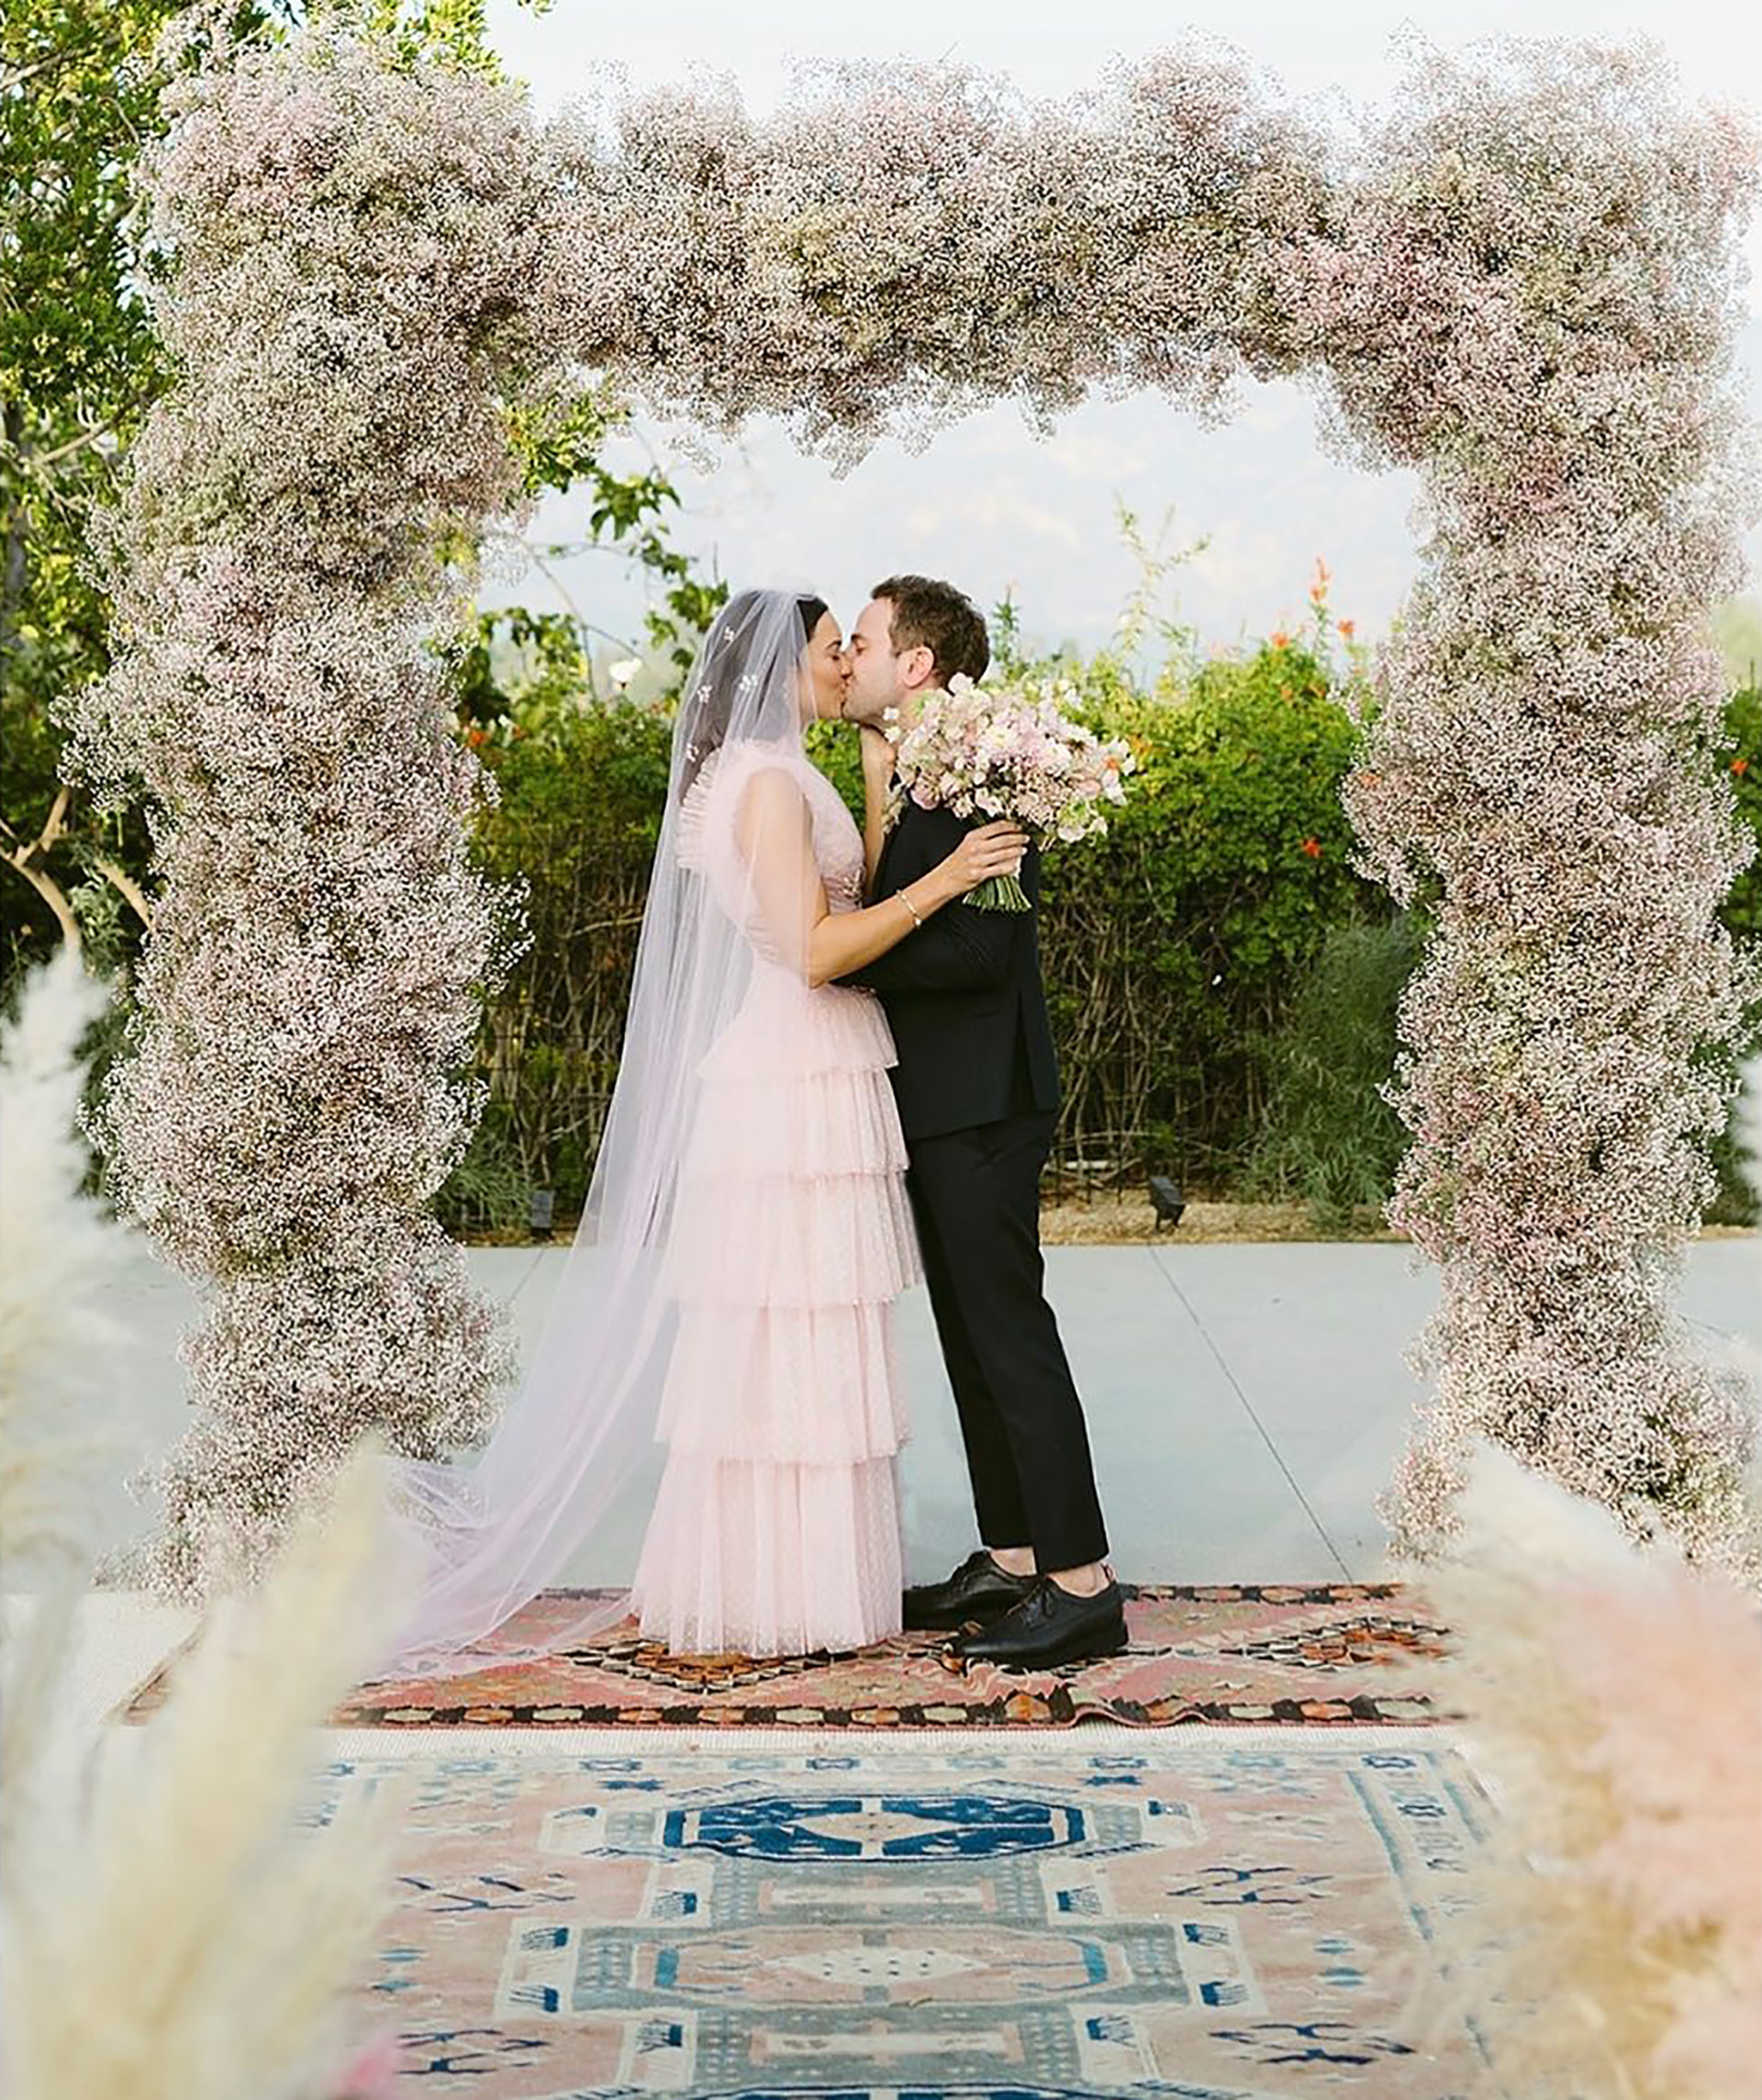 La actriz Mandy Moore y el músico Taylor Goldsmith se casaron en el jardín de su casa de Los Ángeles